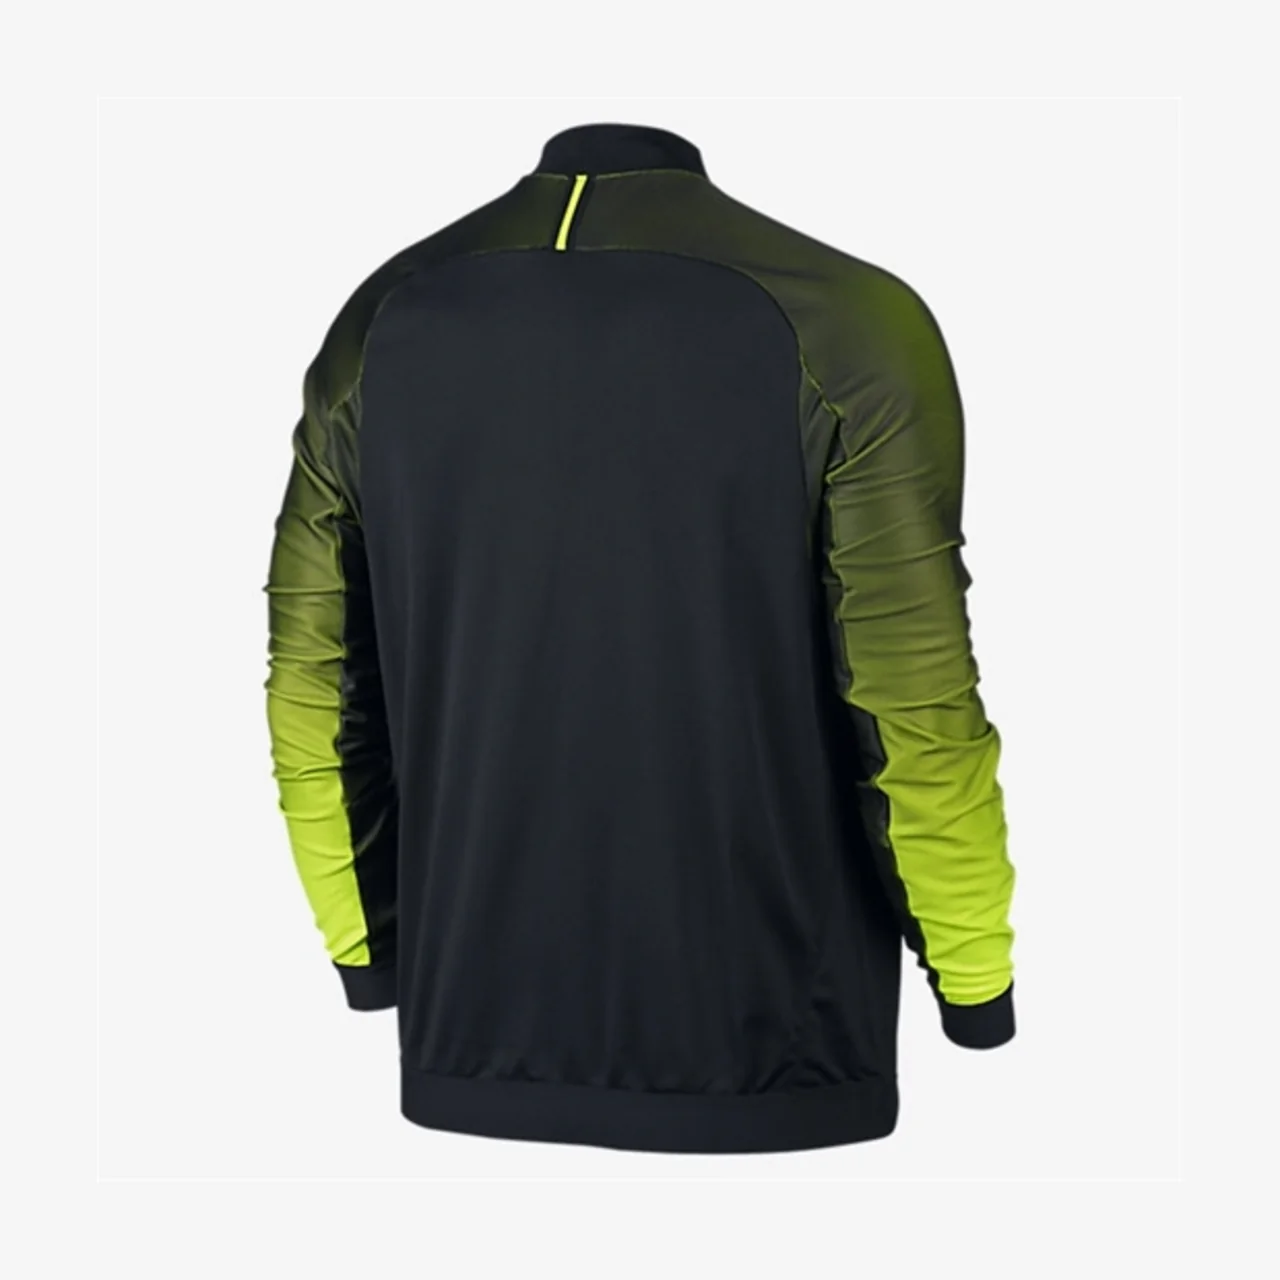 Nike Court Premier Jacket Black/Volt